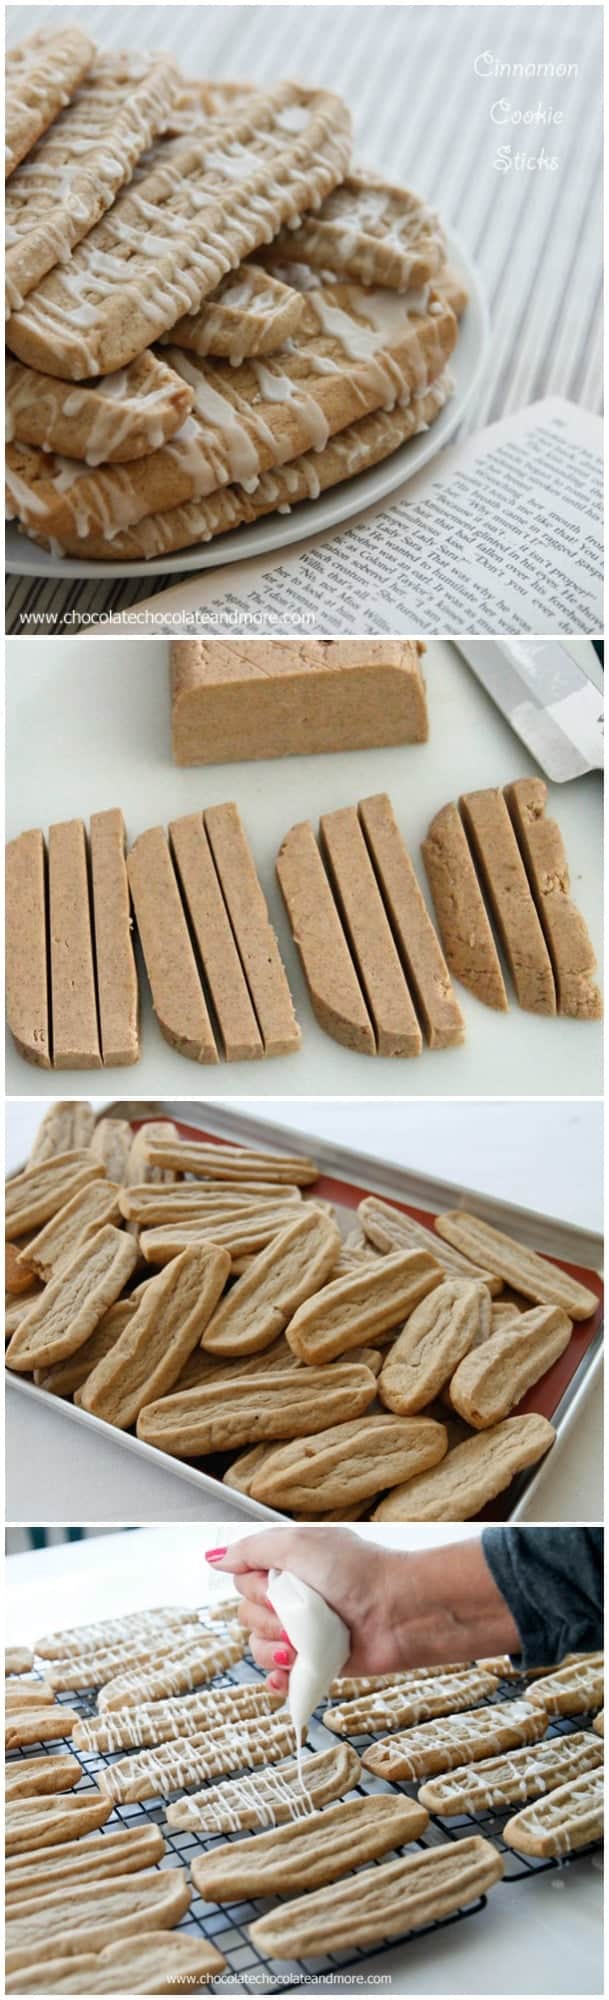 Cinnamon Cookie Sticks